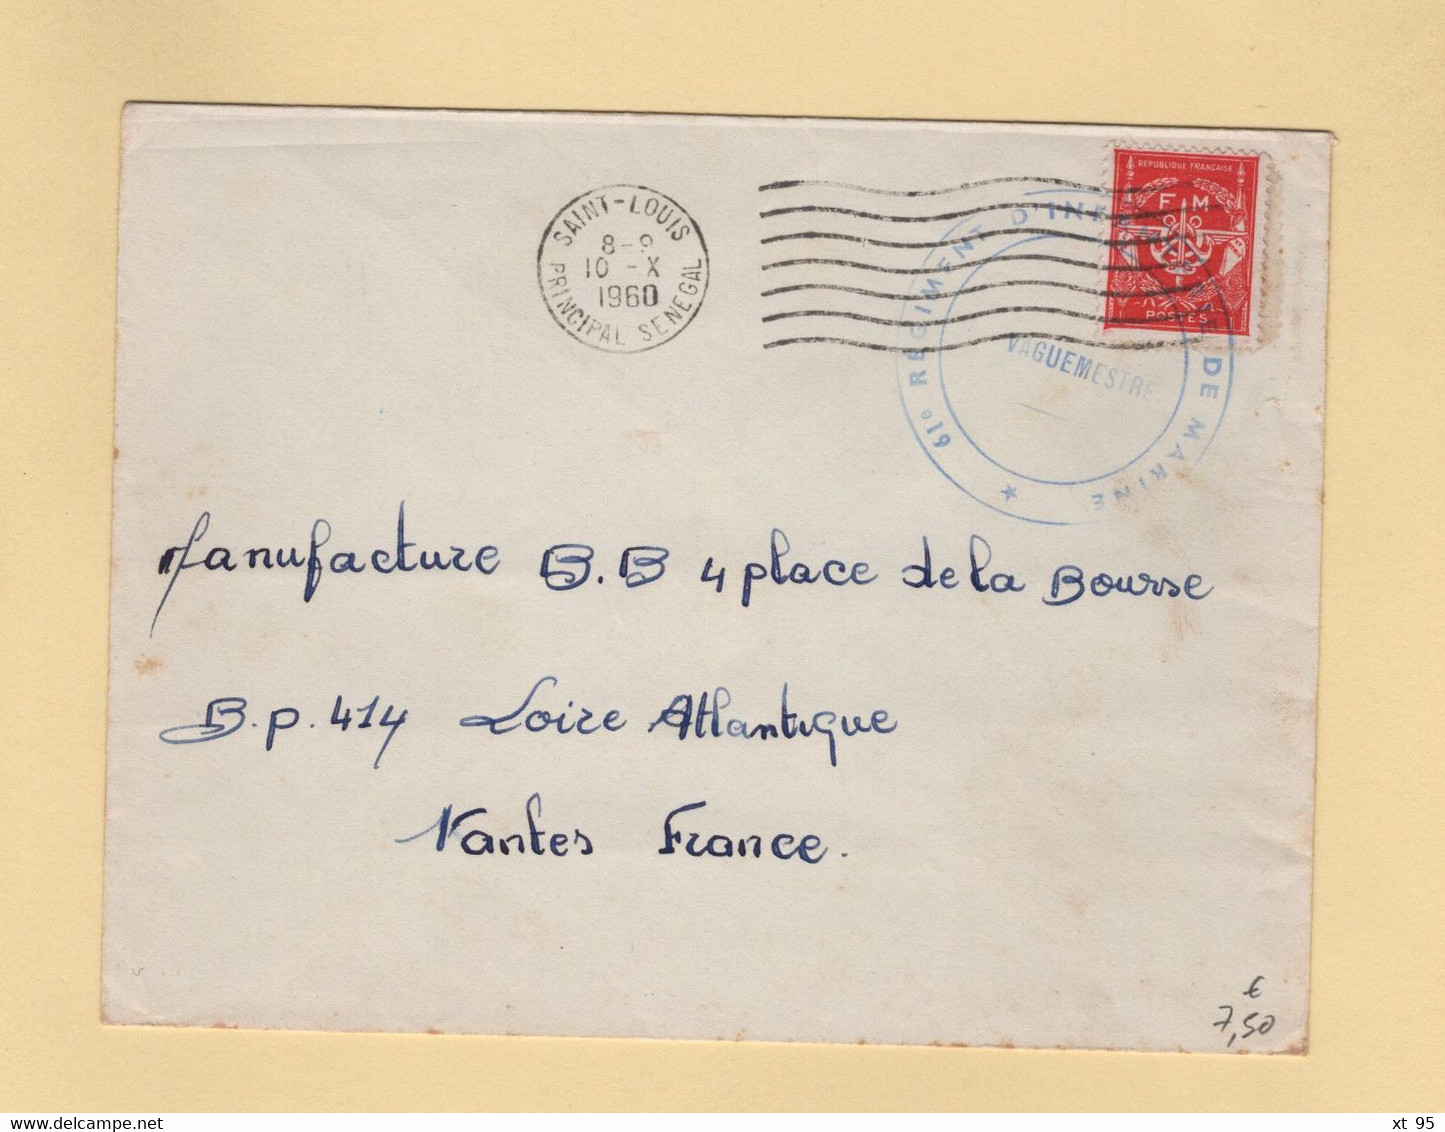 Timbre FM - Saint Louis - Senegal - 1960 - 61e Regiment D Infanterie De Marine - Military Postage Stamps